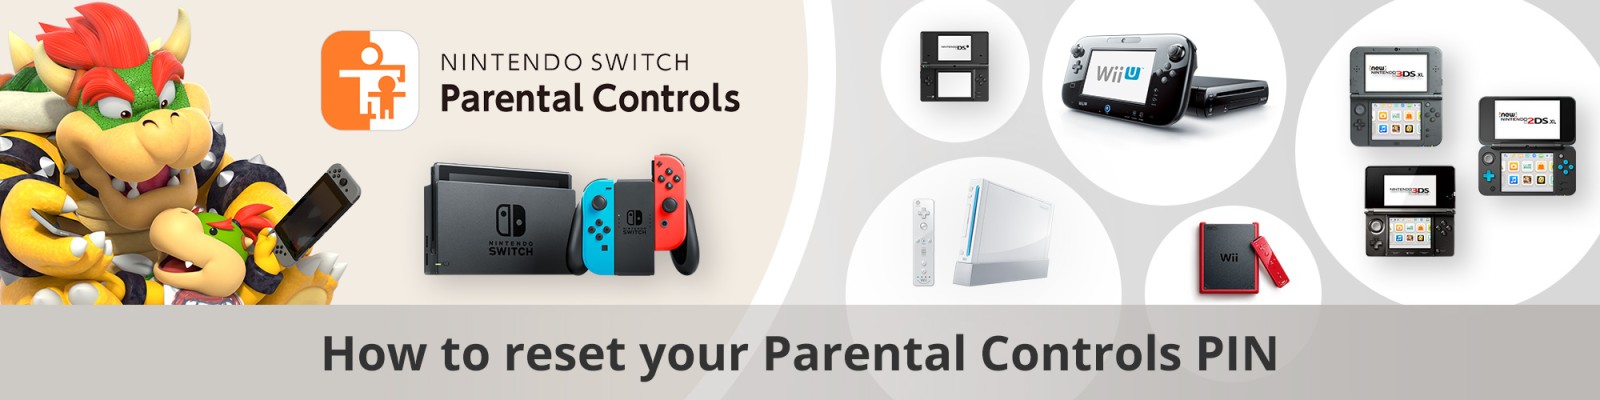 navneord landsby Forlænge Nintendo Parental Controls PIN Reset | Parents | Support | Nintendo